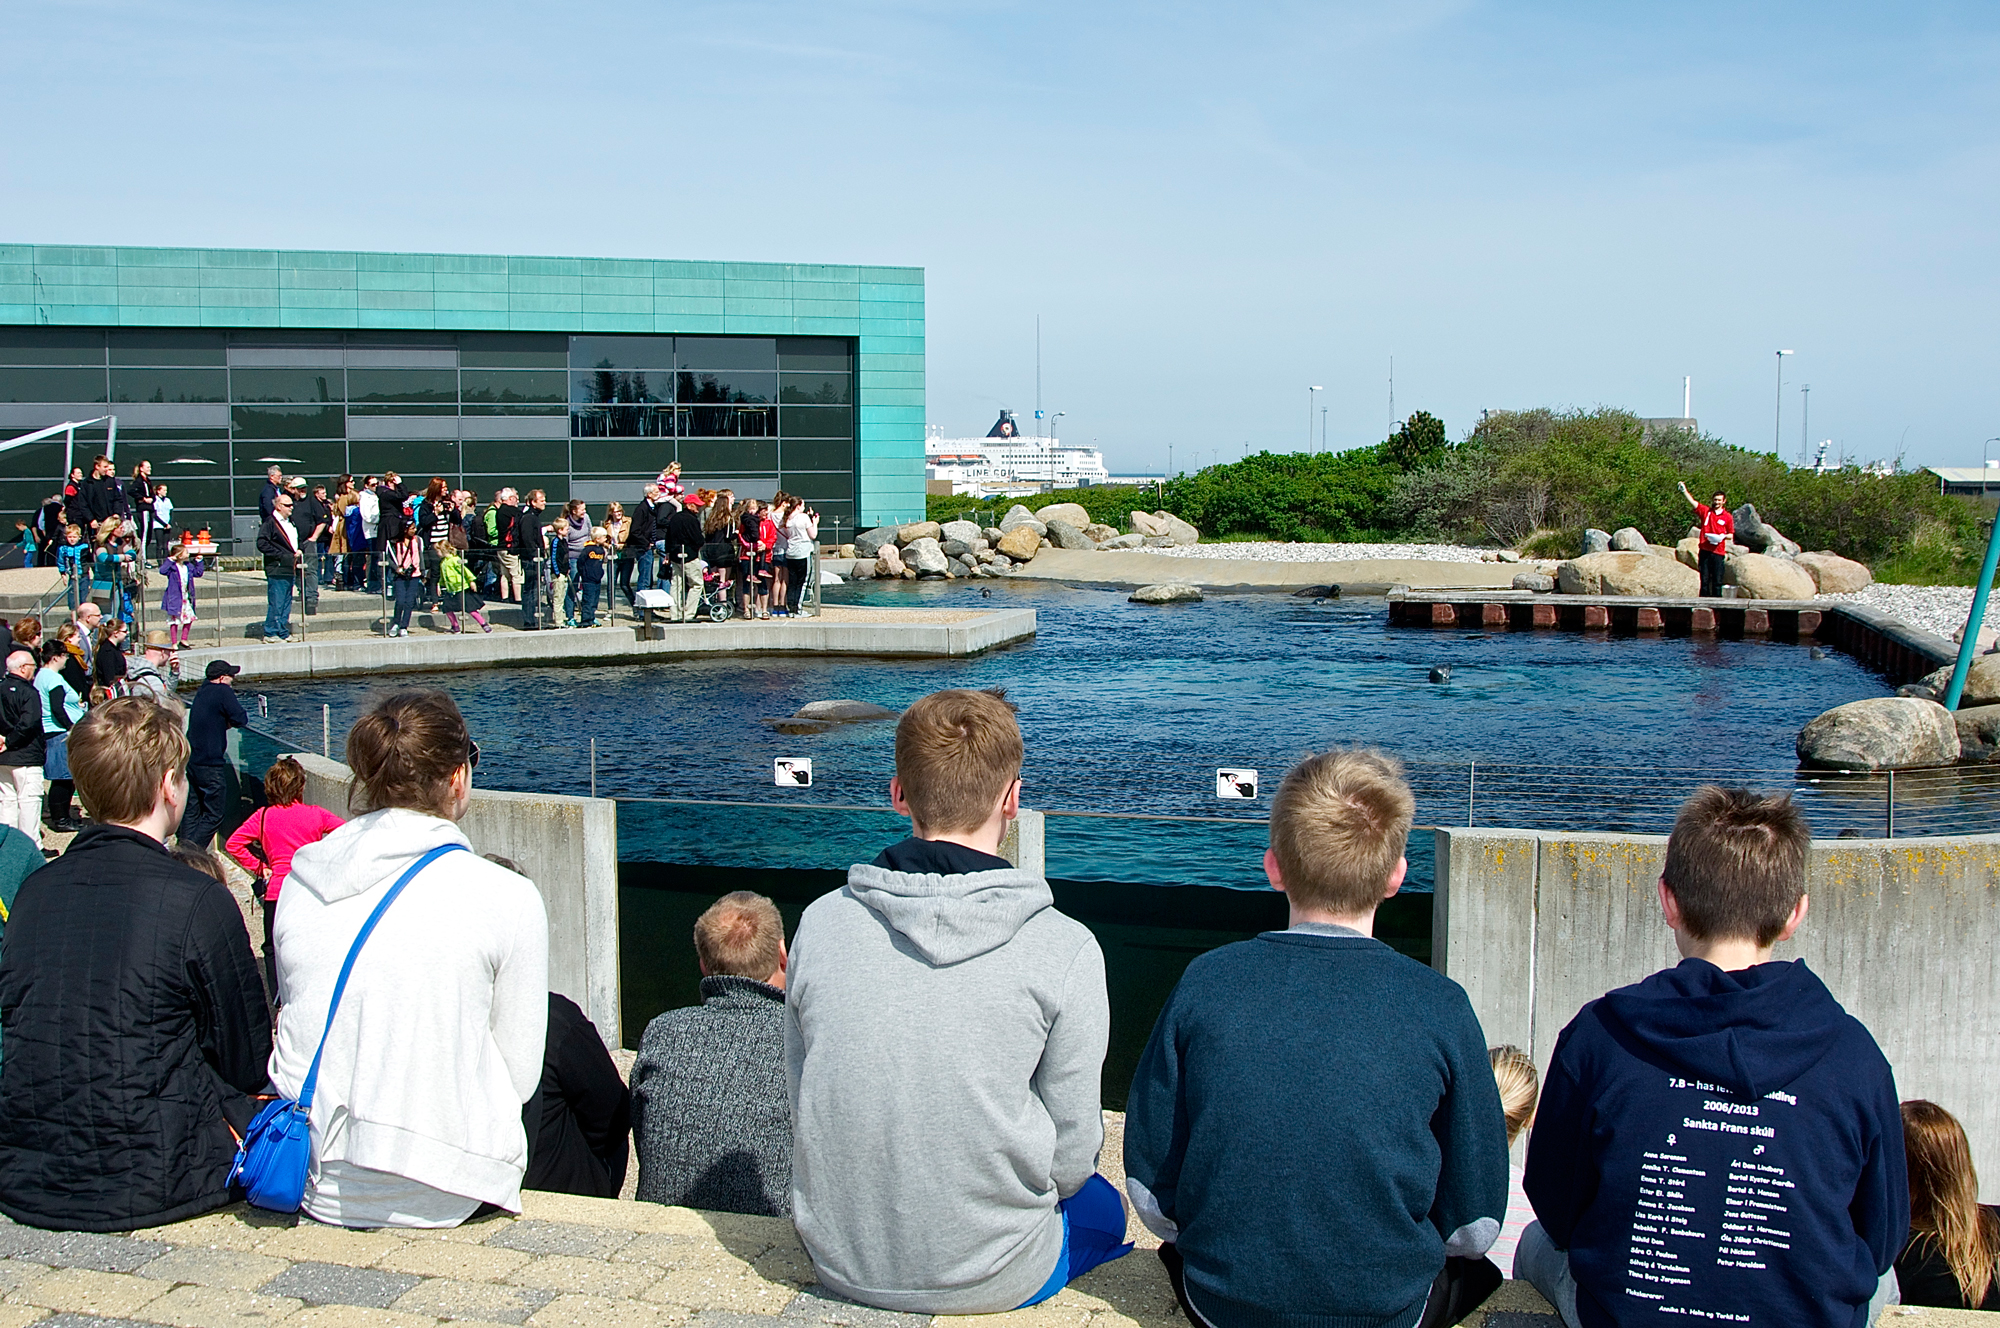 Nordeuropas akvarium ligger i en lille dansk fiskerby | ScienceBlog